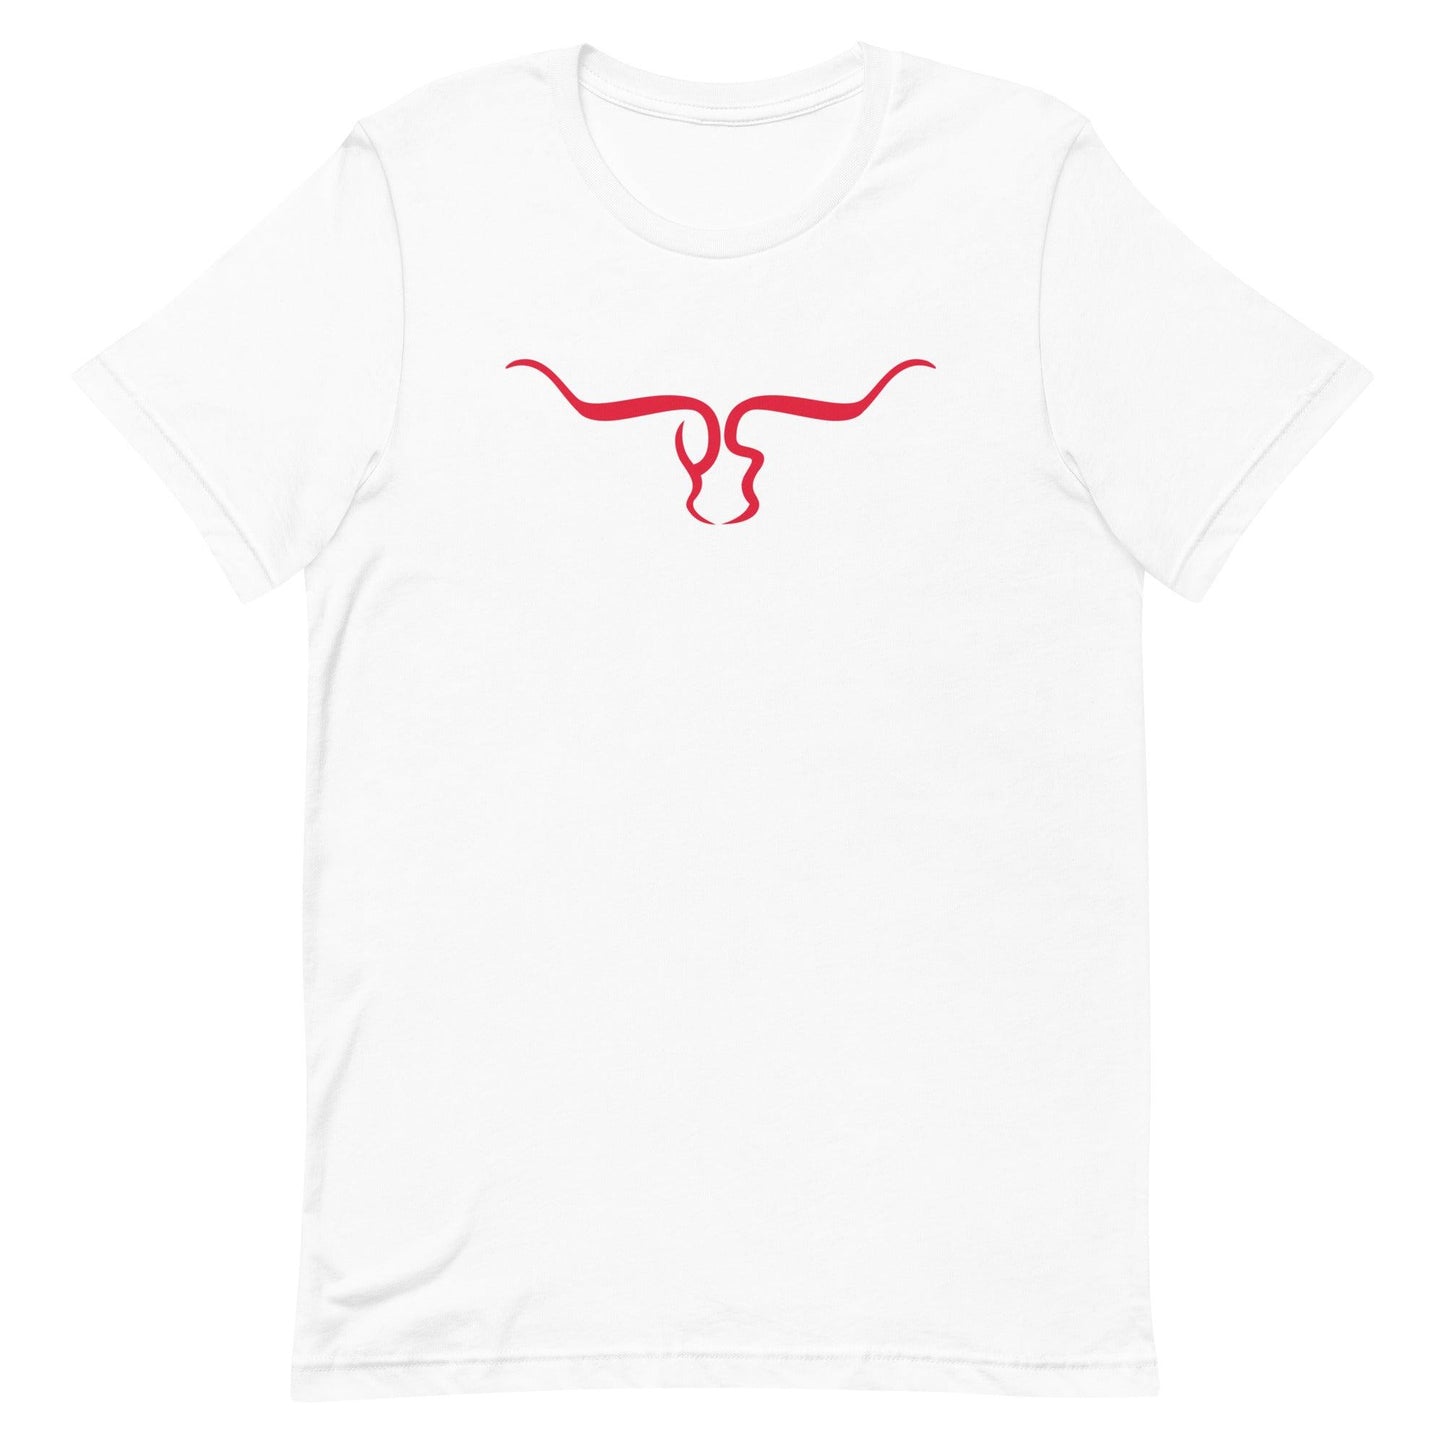 Phalen Sanford “Signature” t-shirt - Fan Arch